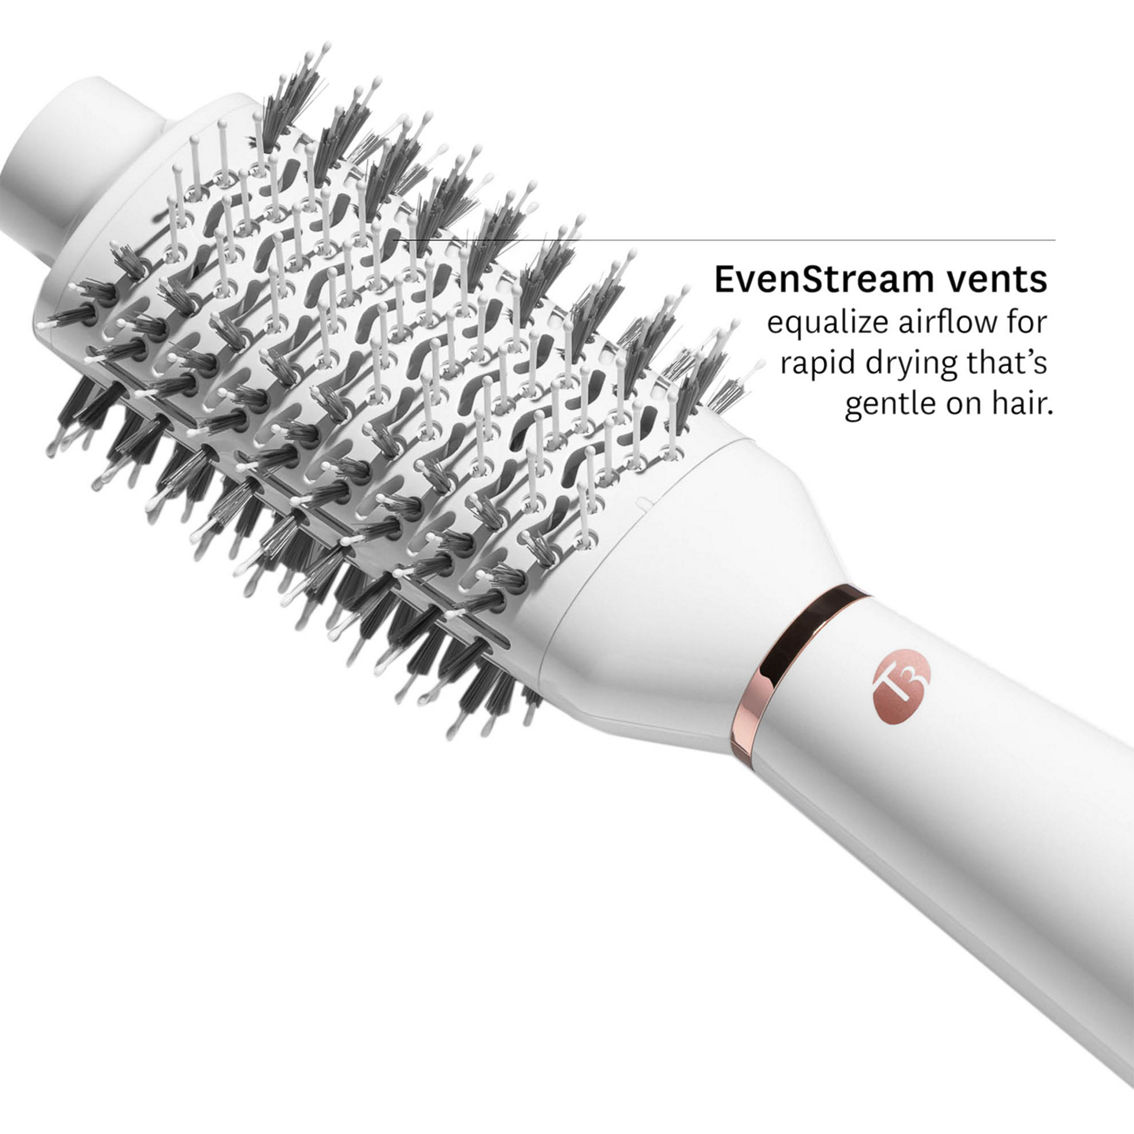 T3 AireBrush One Step Smoothing and Volumizing Hair Dryer Brush - Image 2 of 10